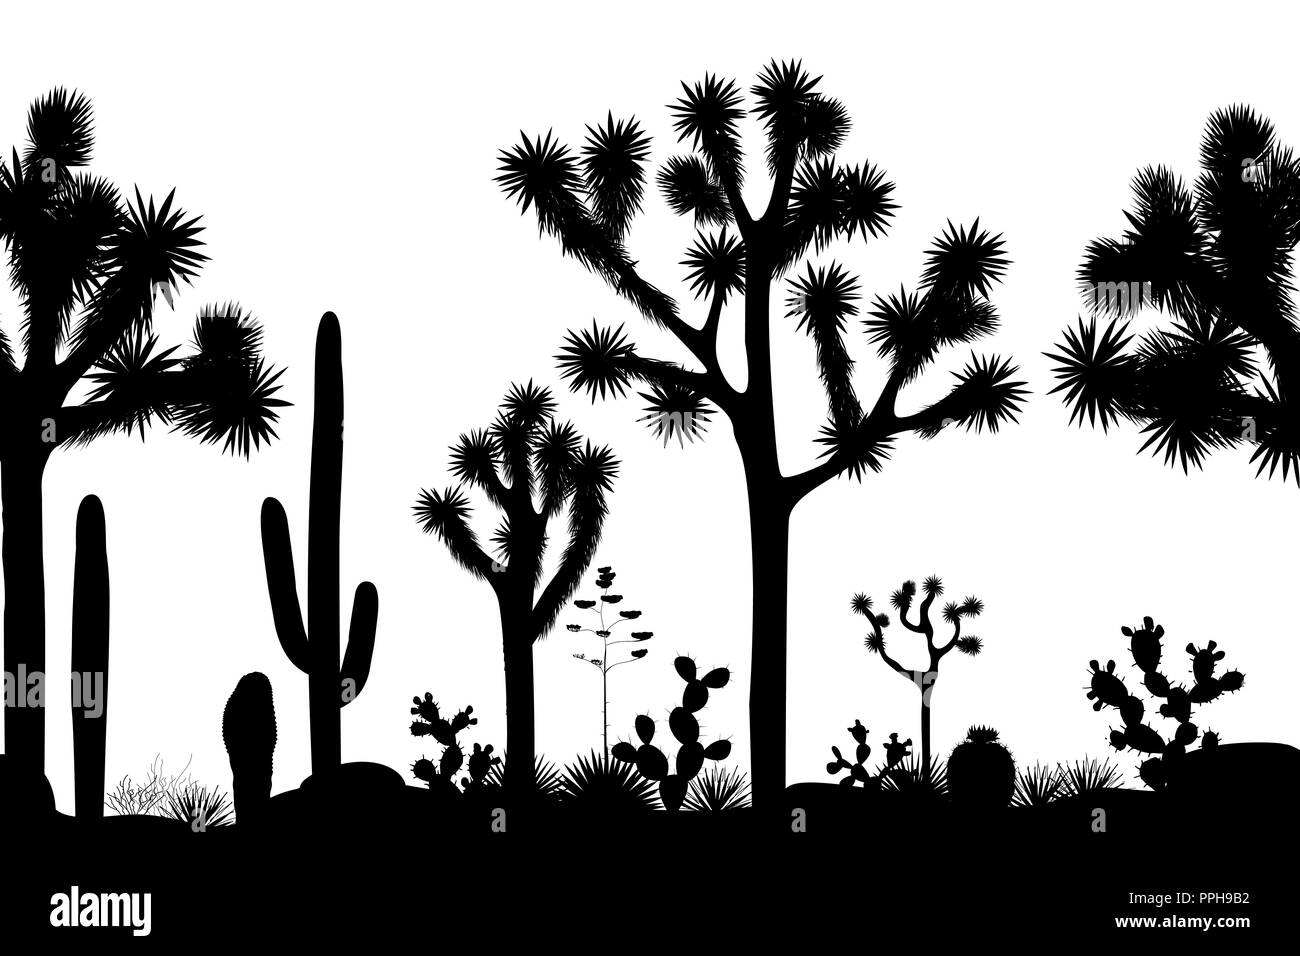 Desierto patrón sin fisuras con las siluetas de los árboles Joshua, Opuntia, y saguaro. Fondo blanco y negro. Ilustración vectorial Ilustración del Vector